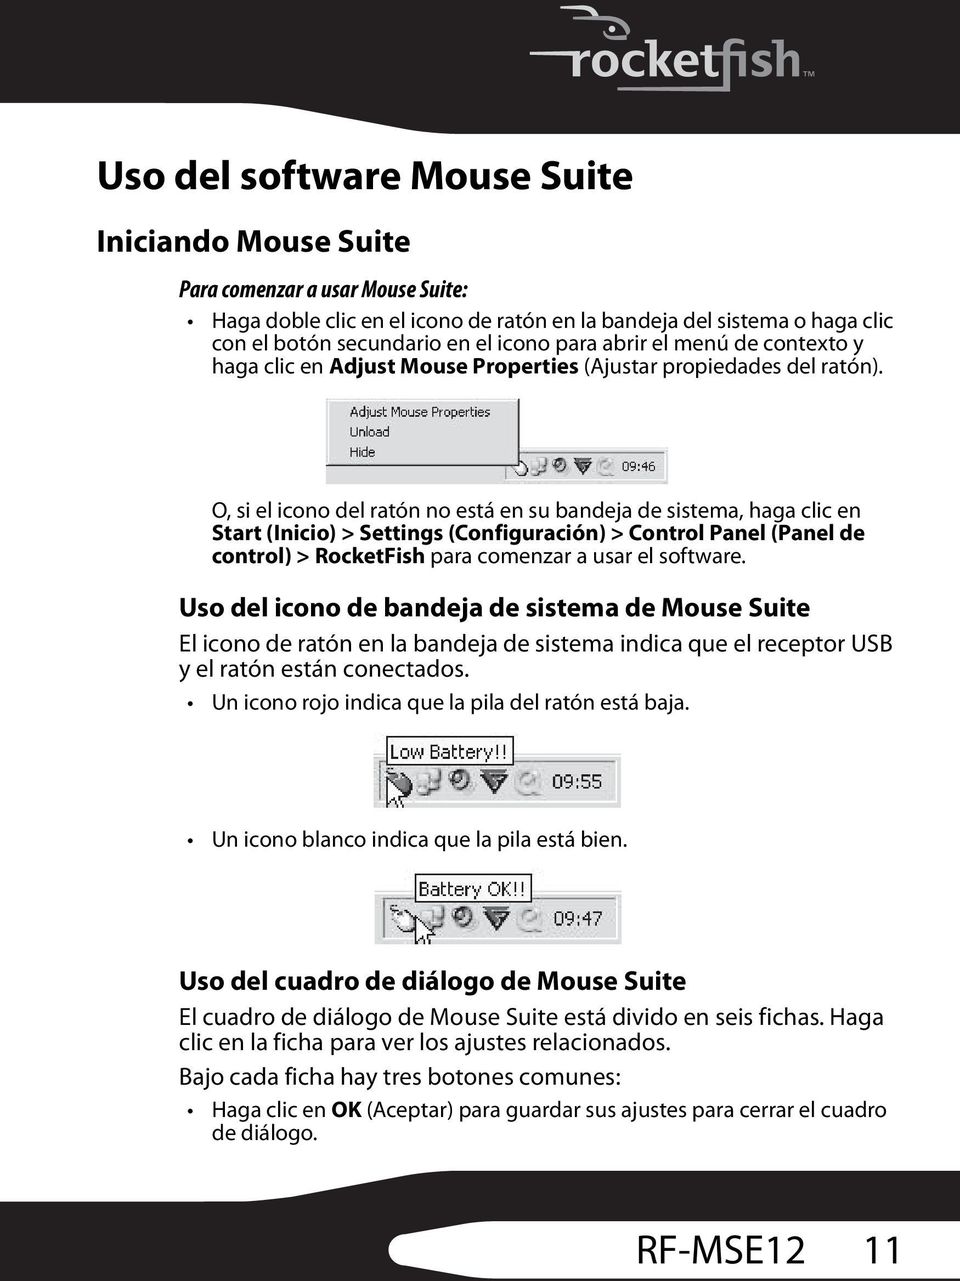 O, si el icono del ratón no está en su bandeja de sistema, haga clic en Start (Inicio) > Settings (Configuración) > Control Panel (Panel de control) > RocketFish para comenzar a usar el software.